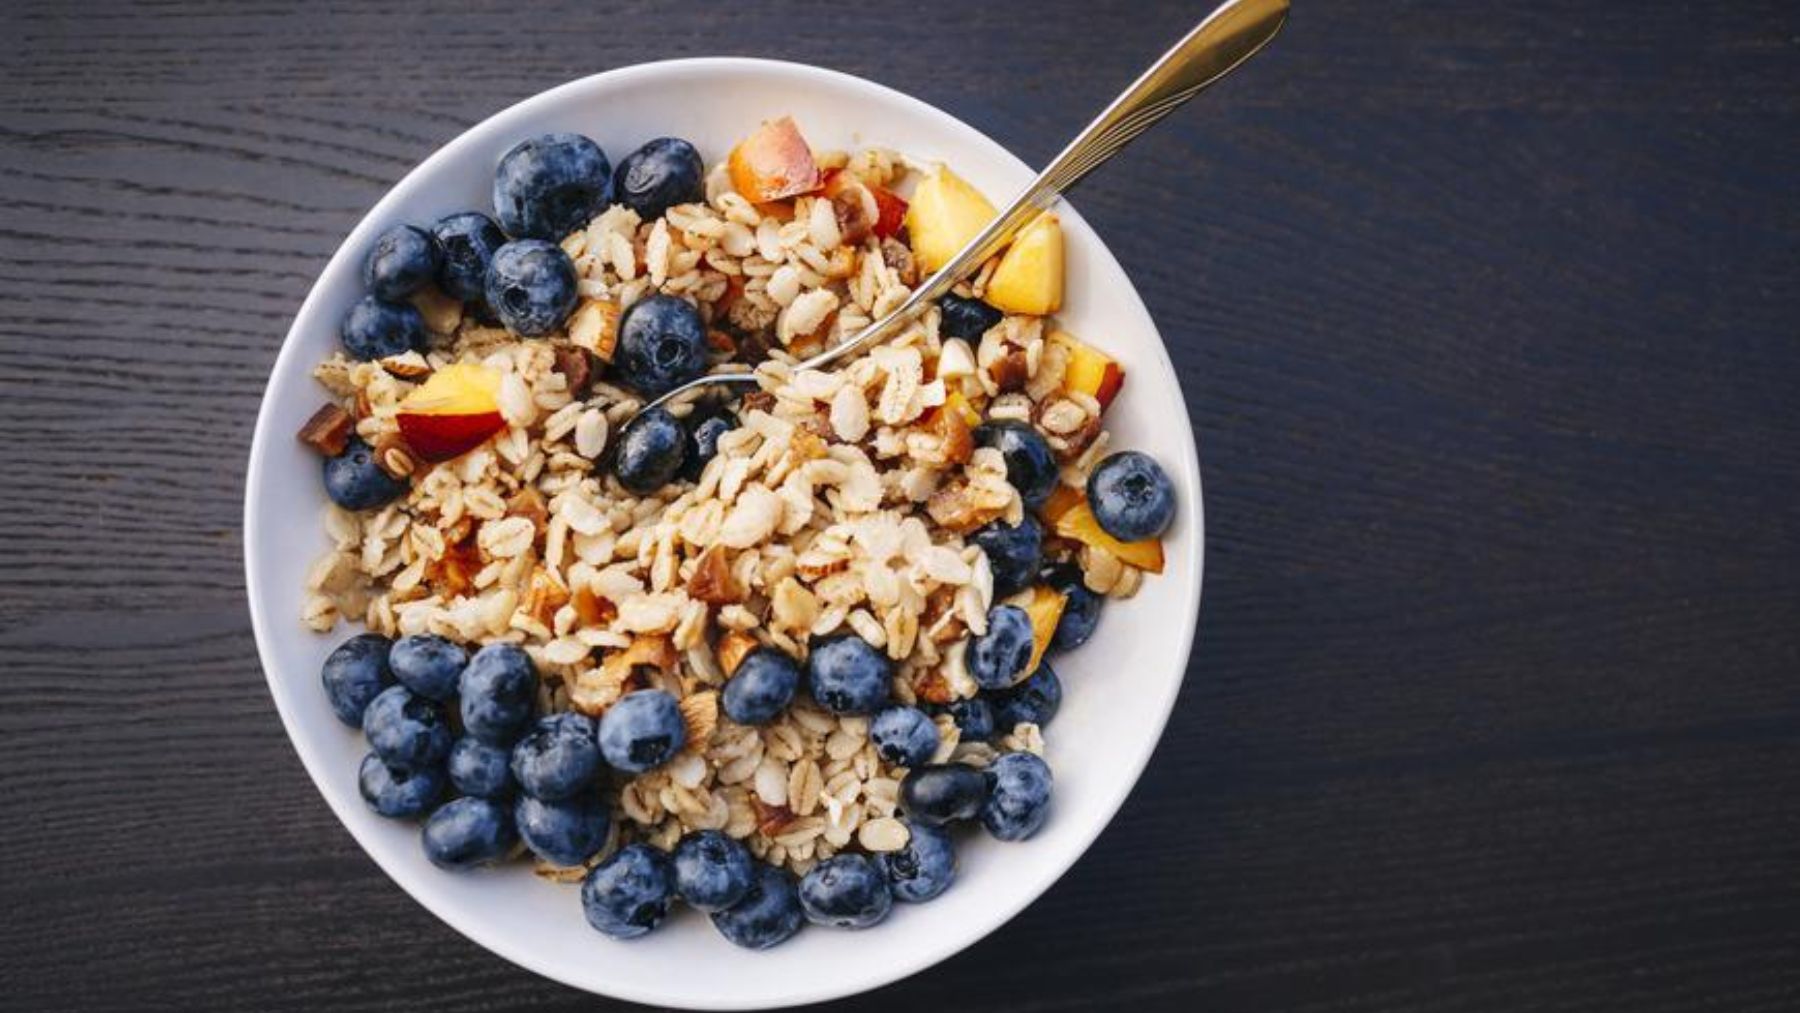 Descubre los alimentos que es mejor evitar en el desayuno